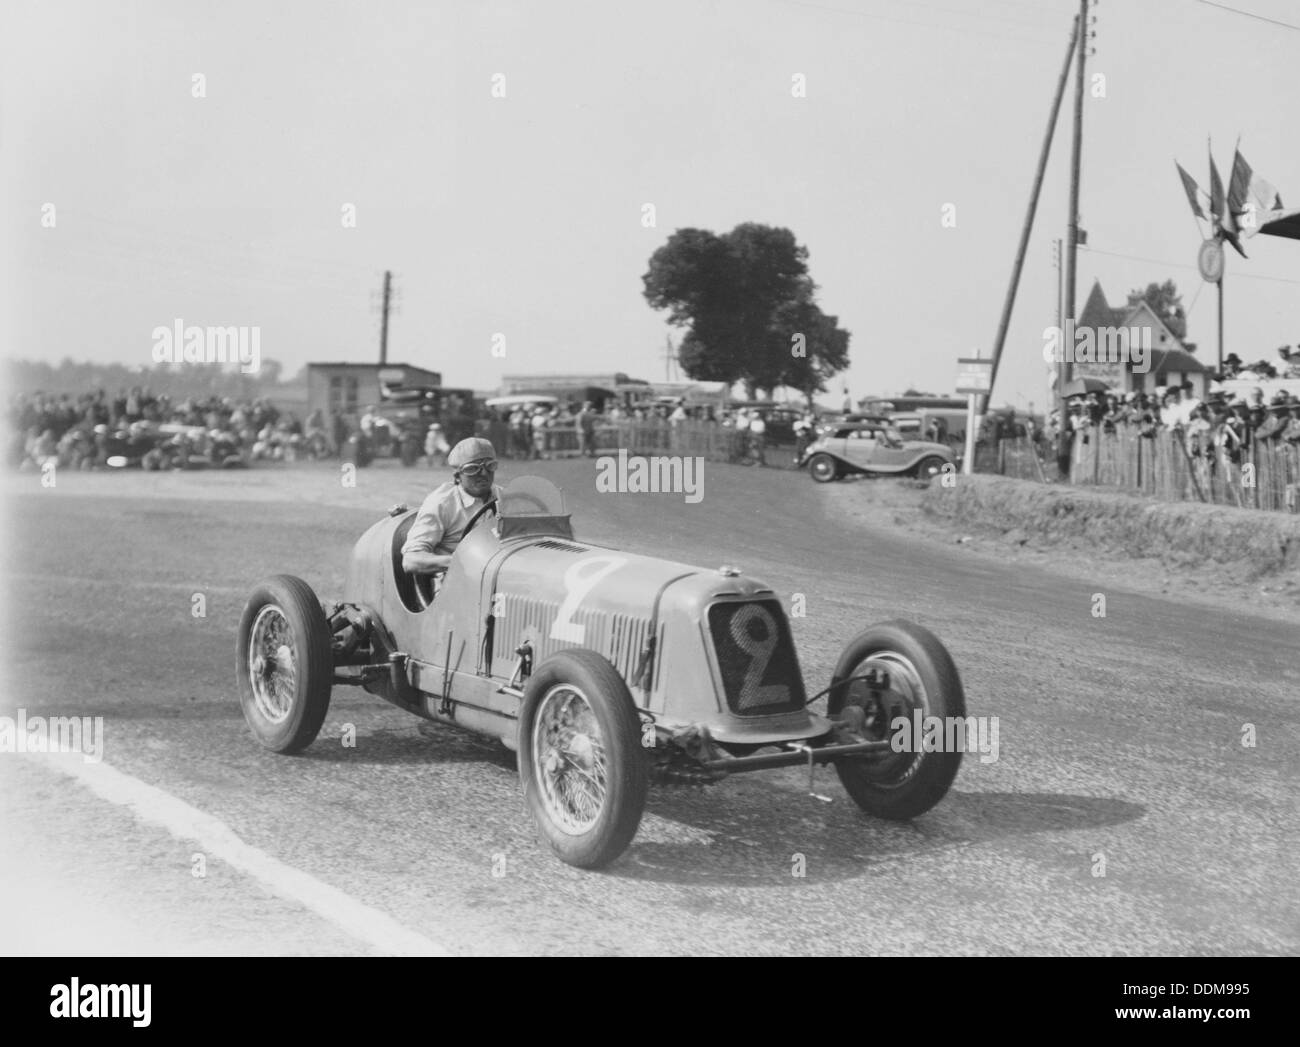 Étancelin nella sua Maserati a Dieppe Grand Prix, Francia, 22 luglio 1934. Artista: sconosciuto Foto Stock